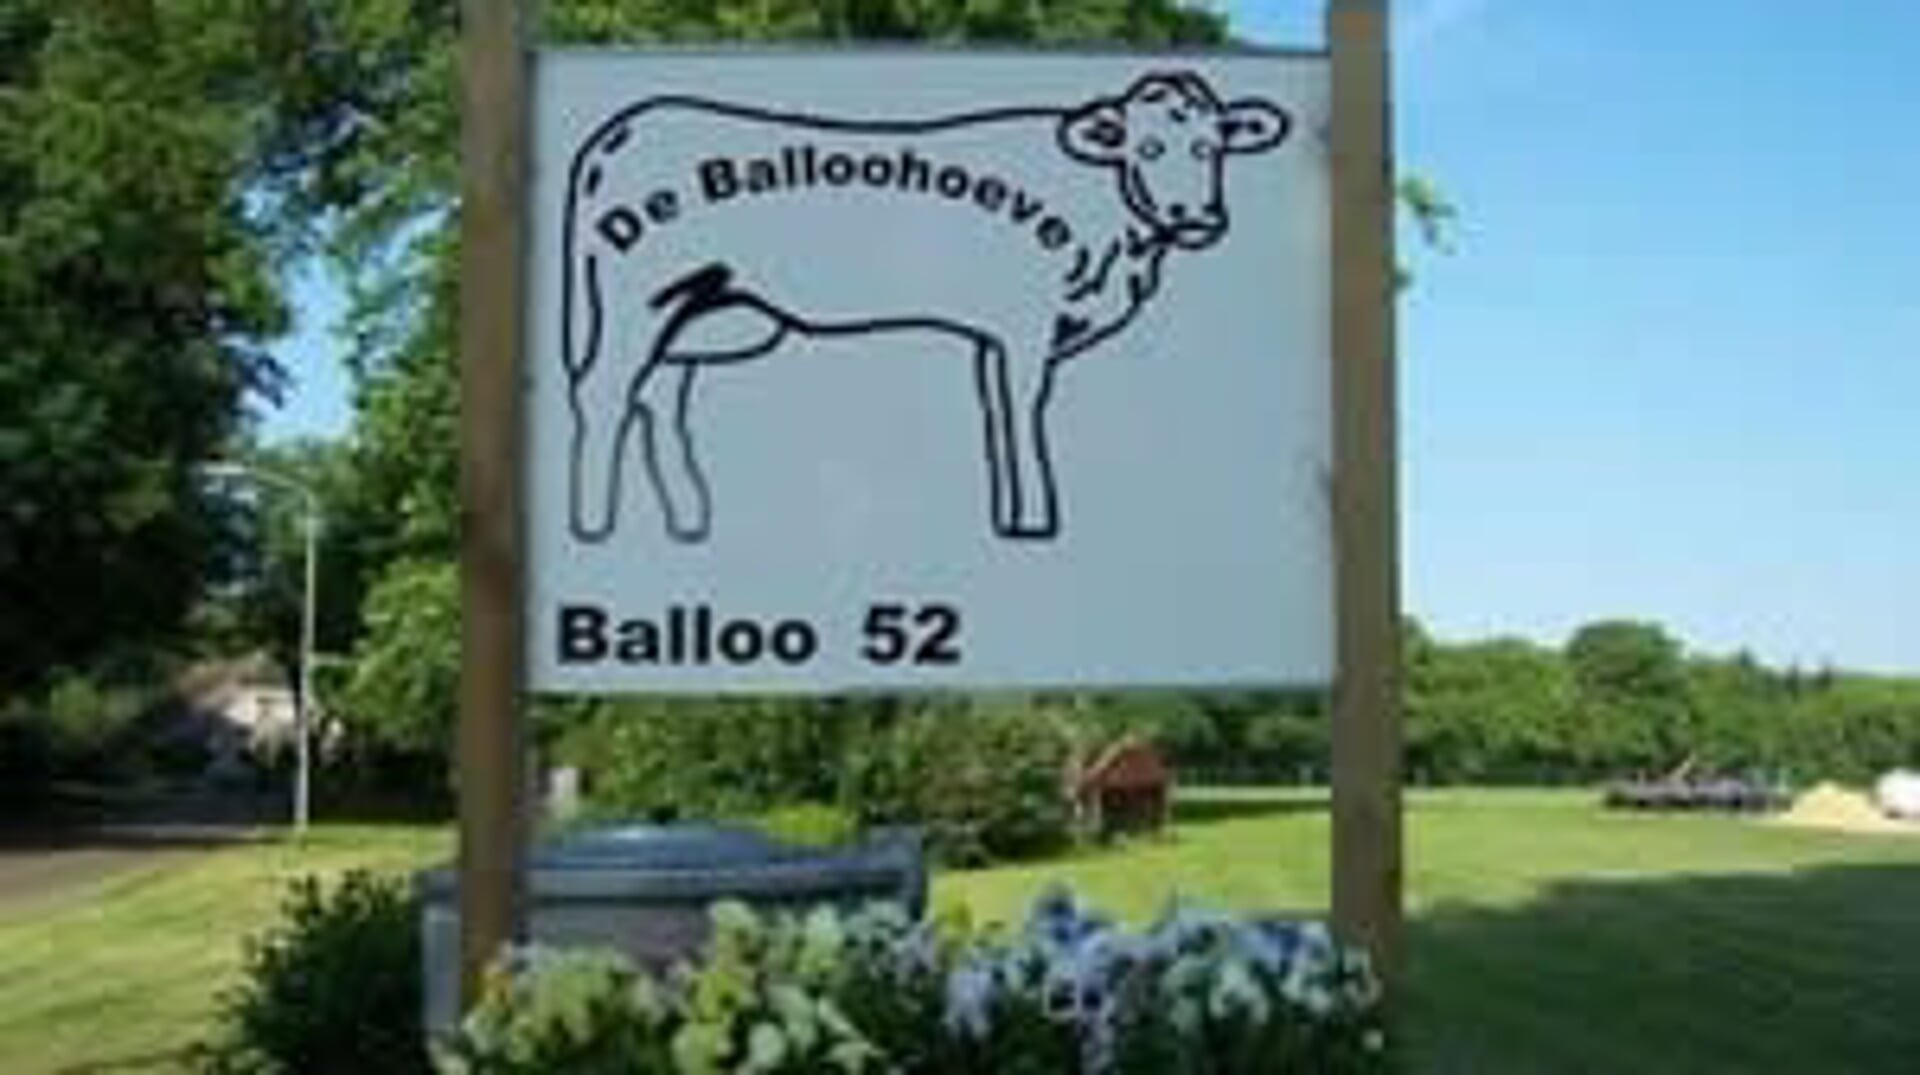 De Balloohoeve houdt een grote voorjaarsmarkt.